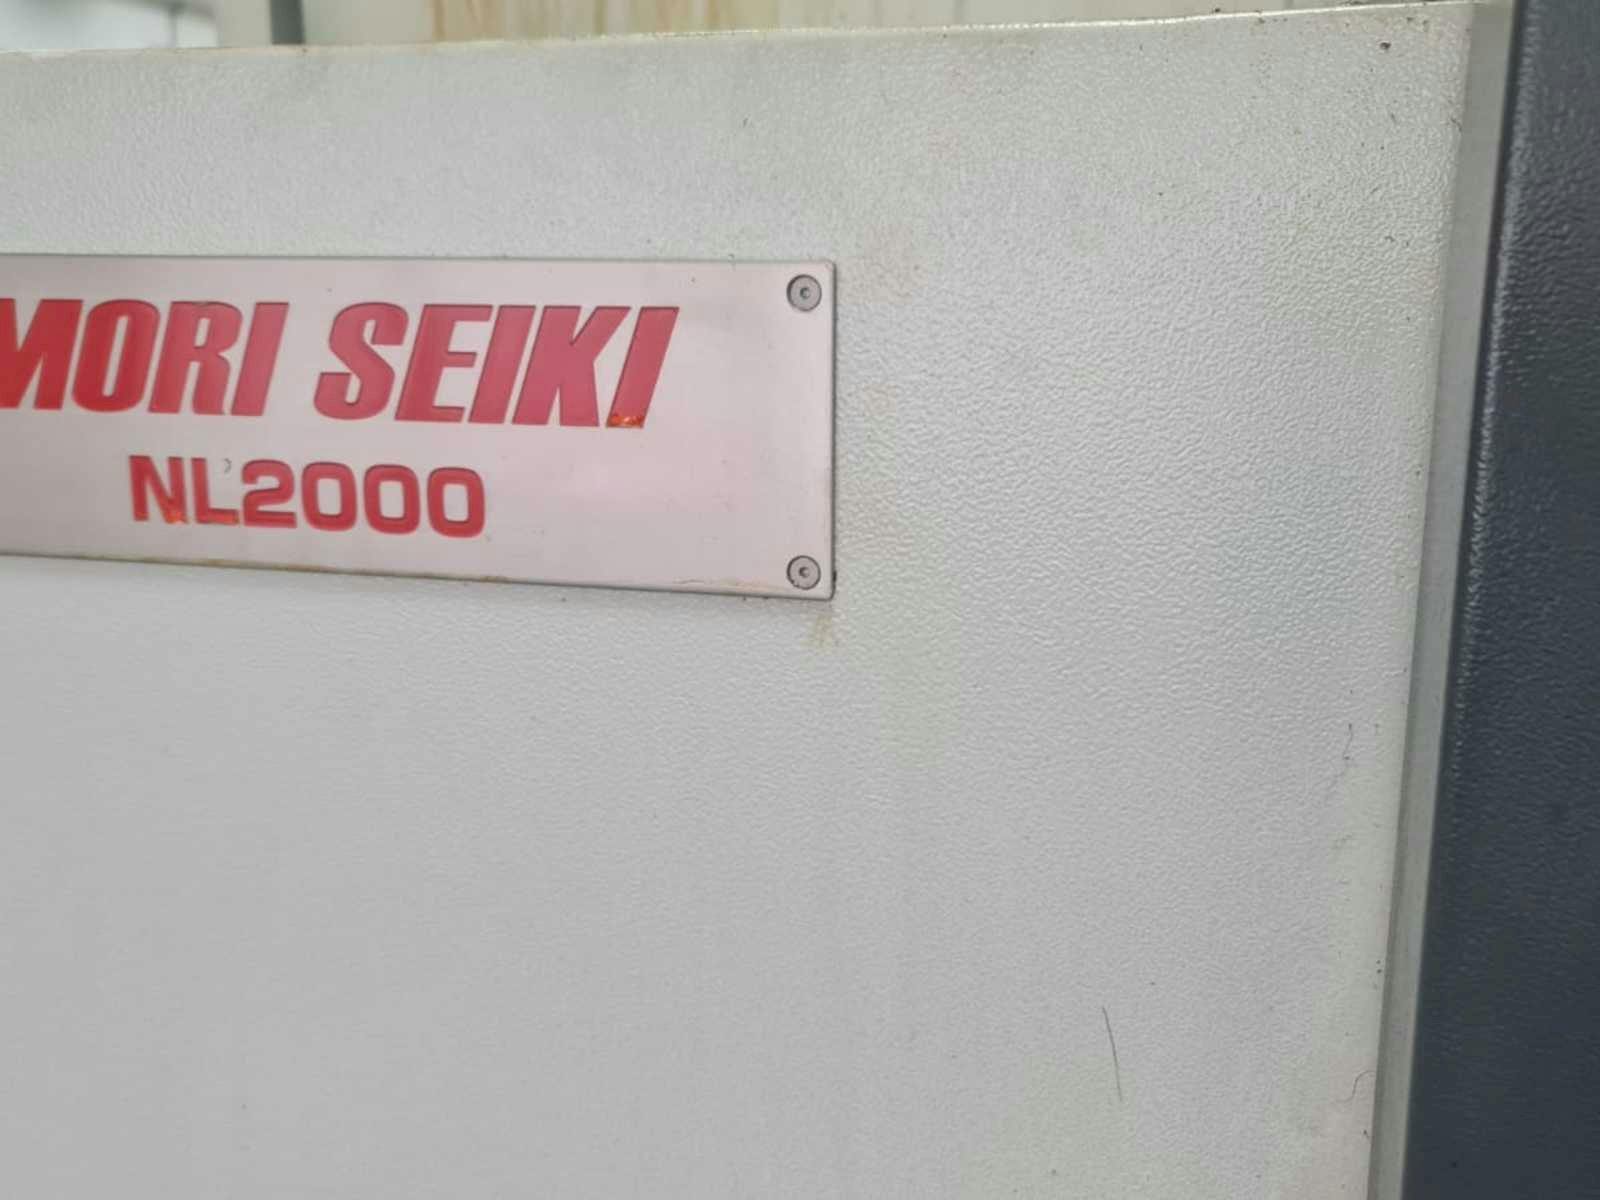 Vooraanzicht  van DMG Mori Seiki NL2000Y  machine